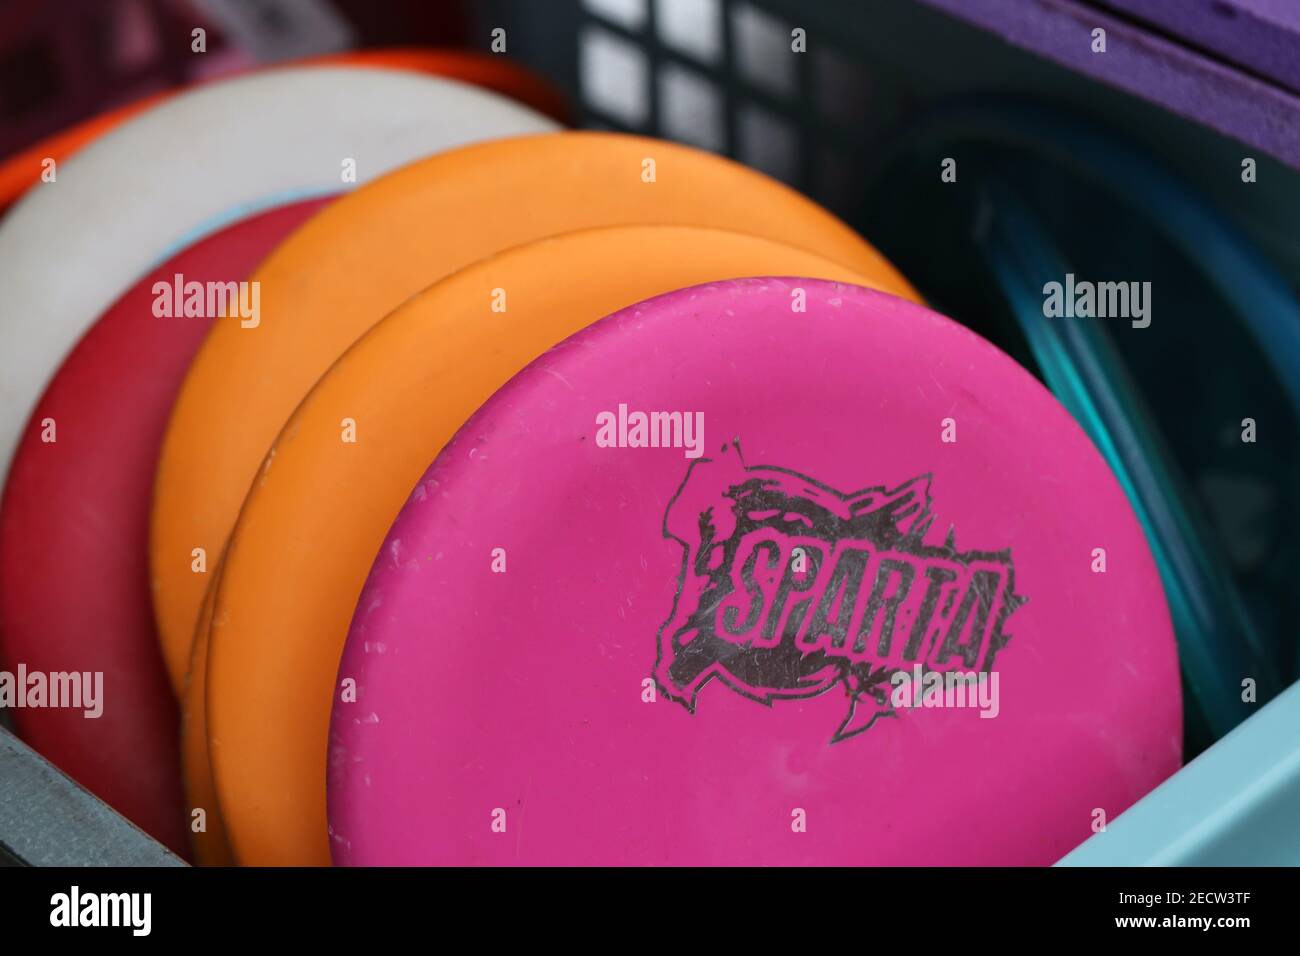 Molto colorato di dischi di golf frisbee in un cesto di plastica. Frisbee rosa, rosso, bianco e arancione. Uno di essi ha il logo Sparta. Editoriale di primo piano. Foto Stock